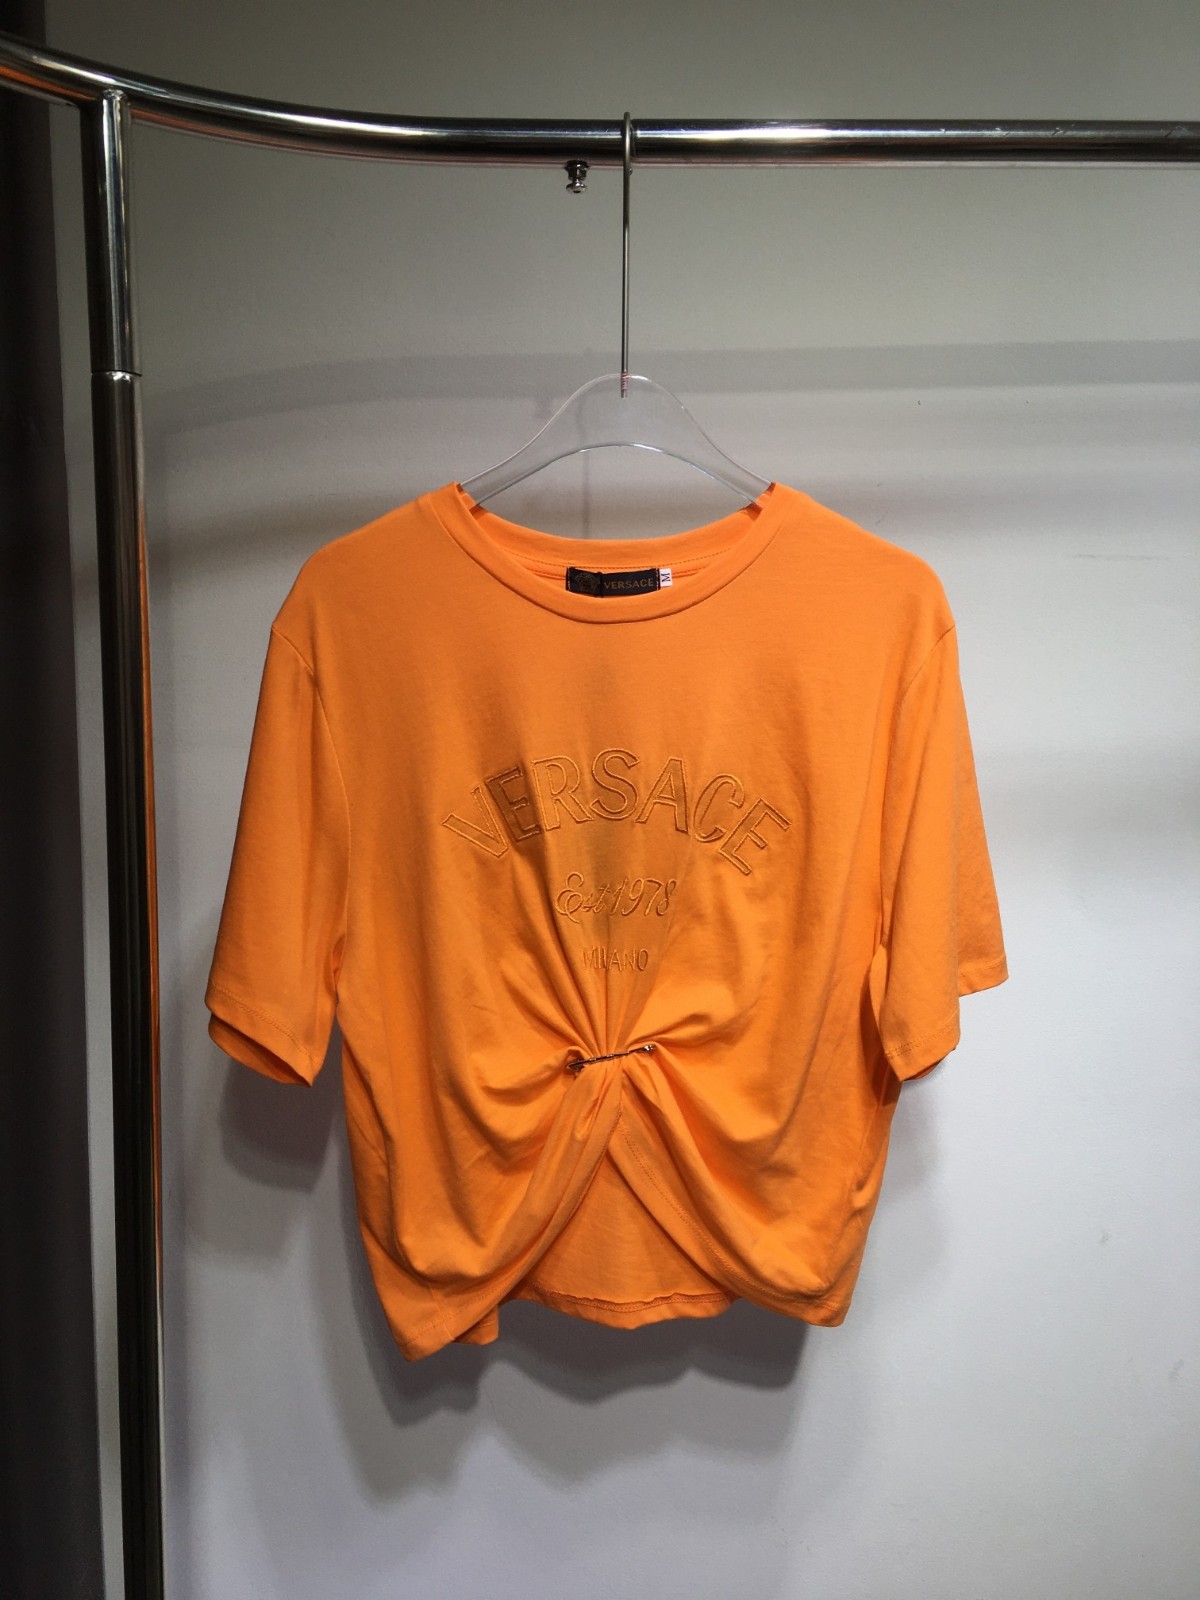 ヴェルサーチェ ミラノ スタンプ クロップ 半袖Tシャツ ヴェルサーチェ Tシャツ コピー オレンジ